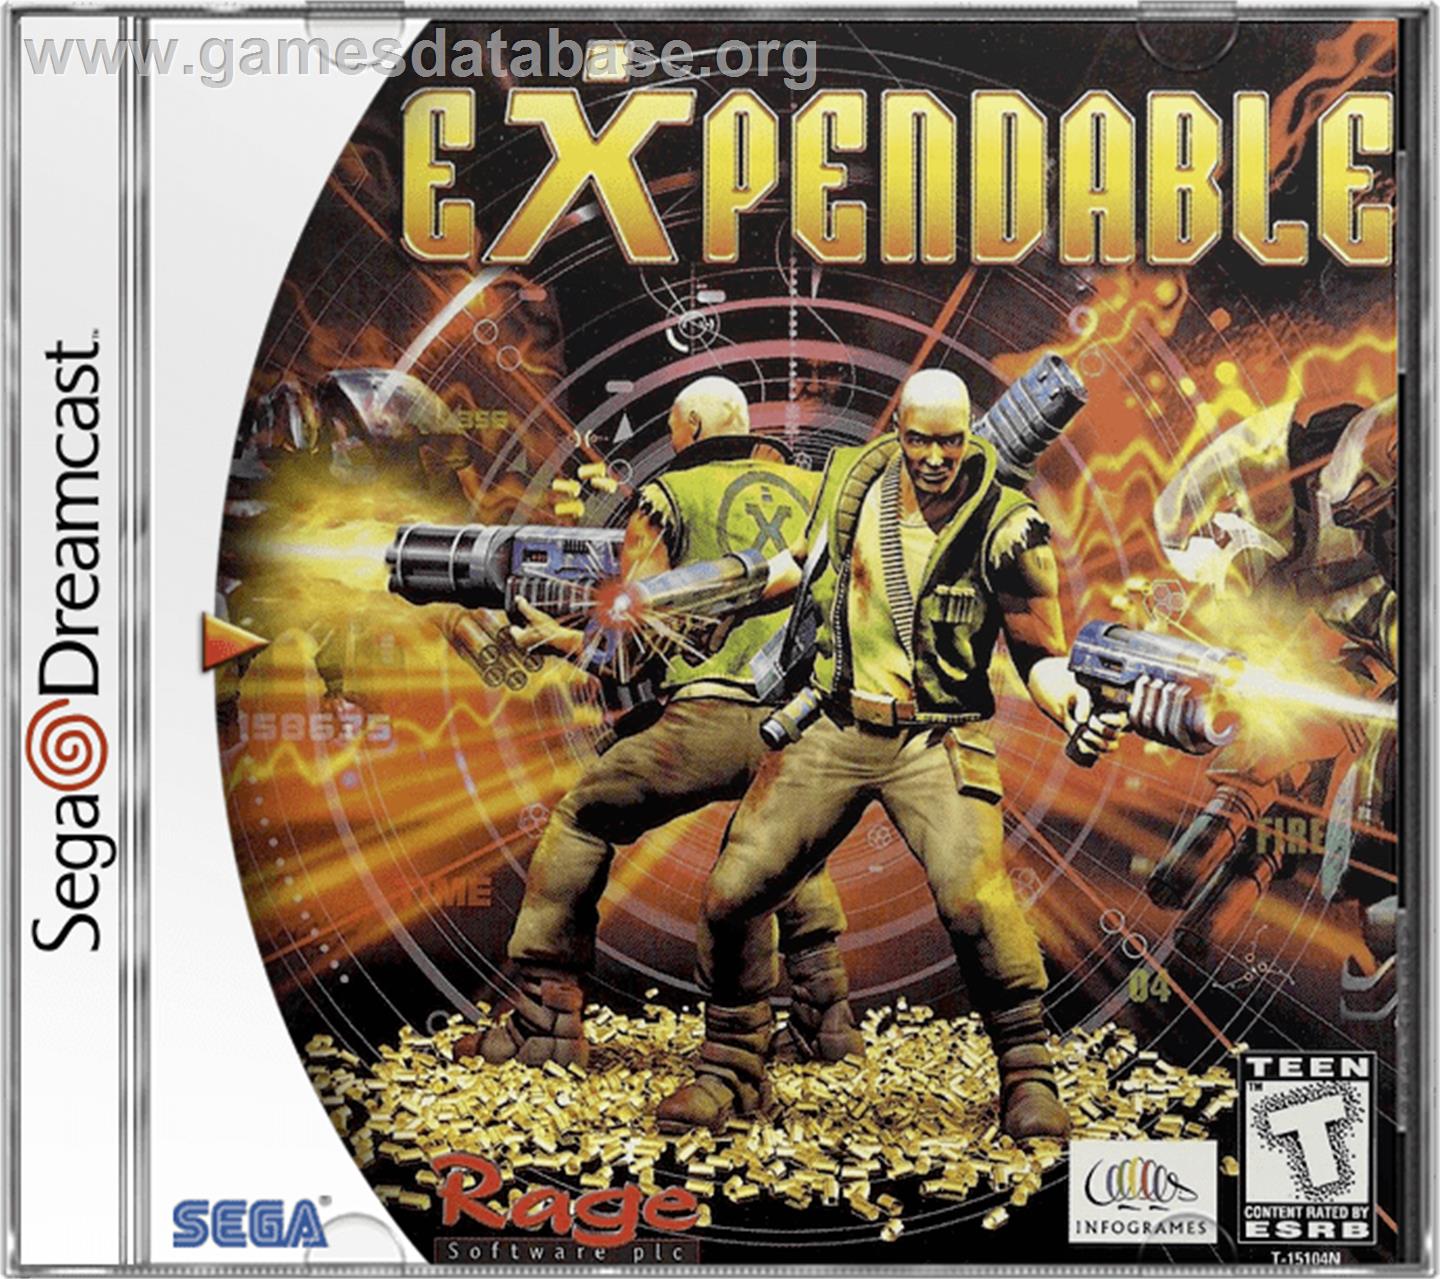 Millennium Soldier: Expendable - Sega Dreamcast - Artwork - Box